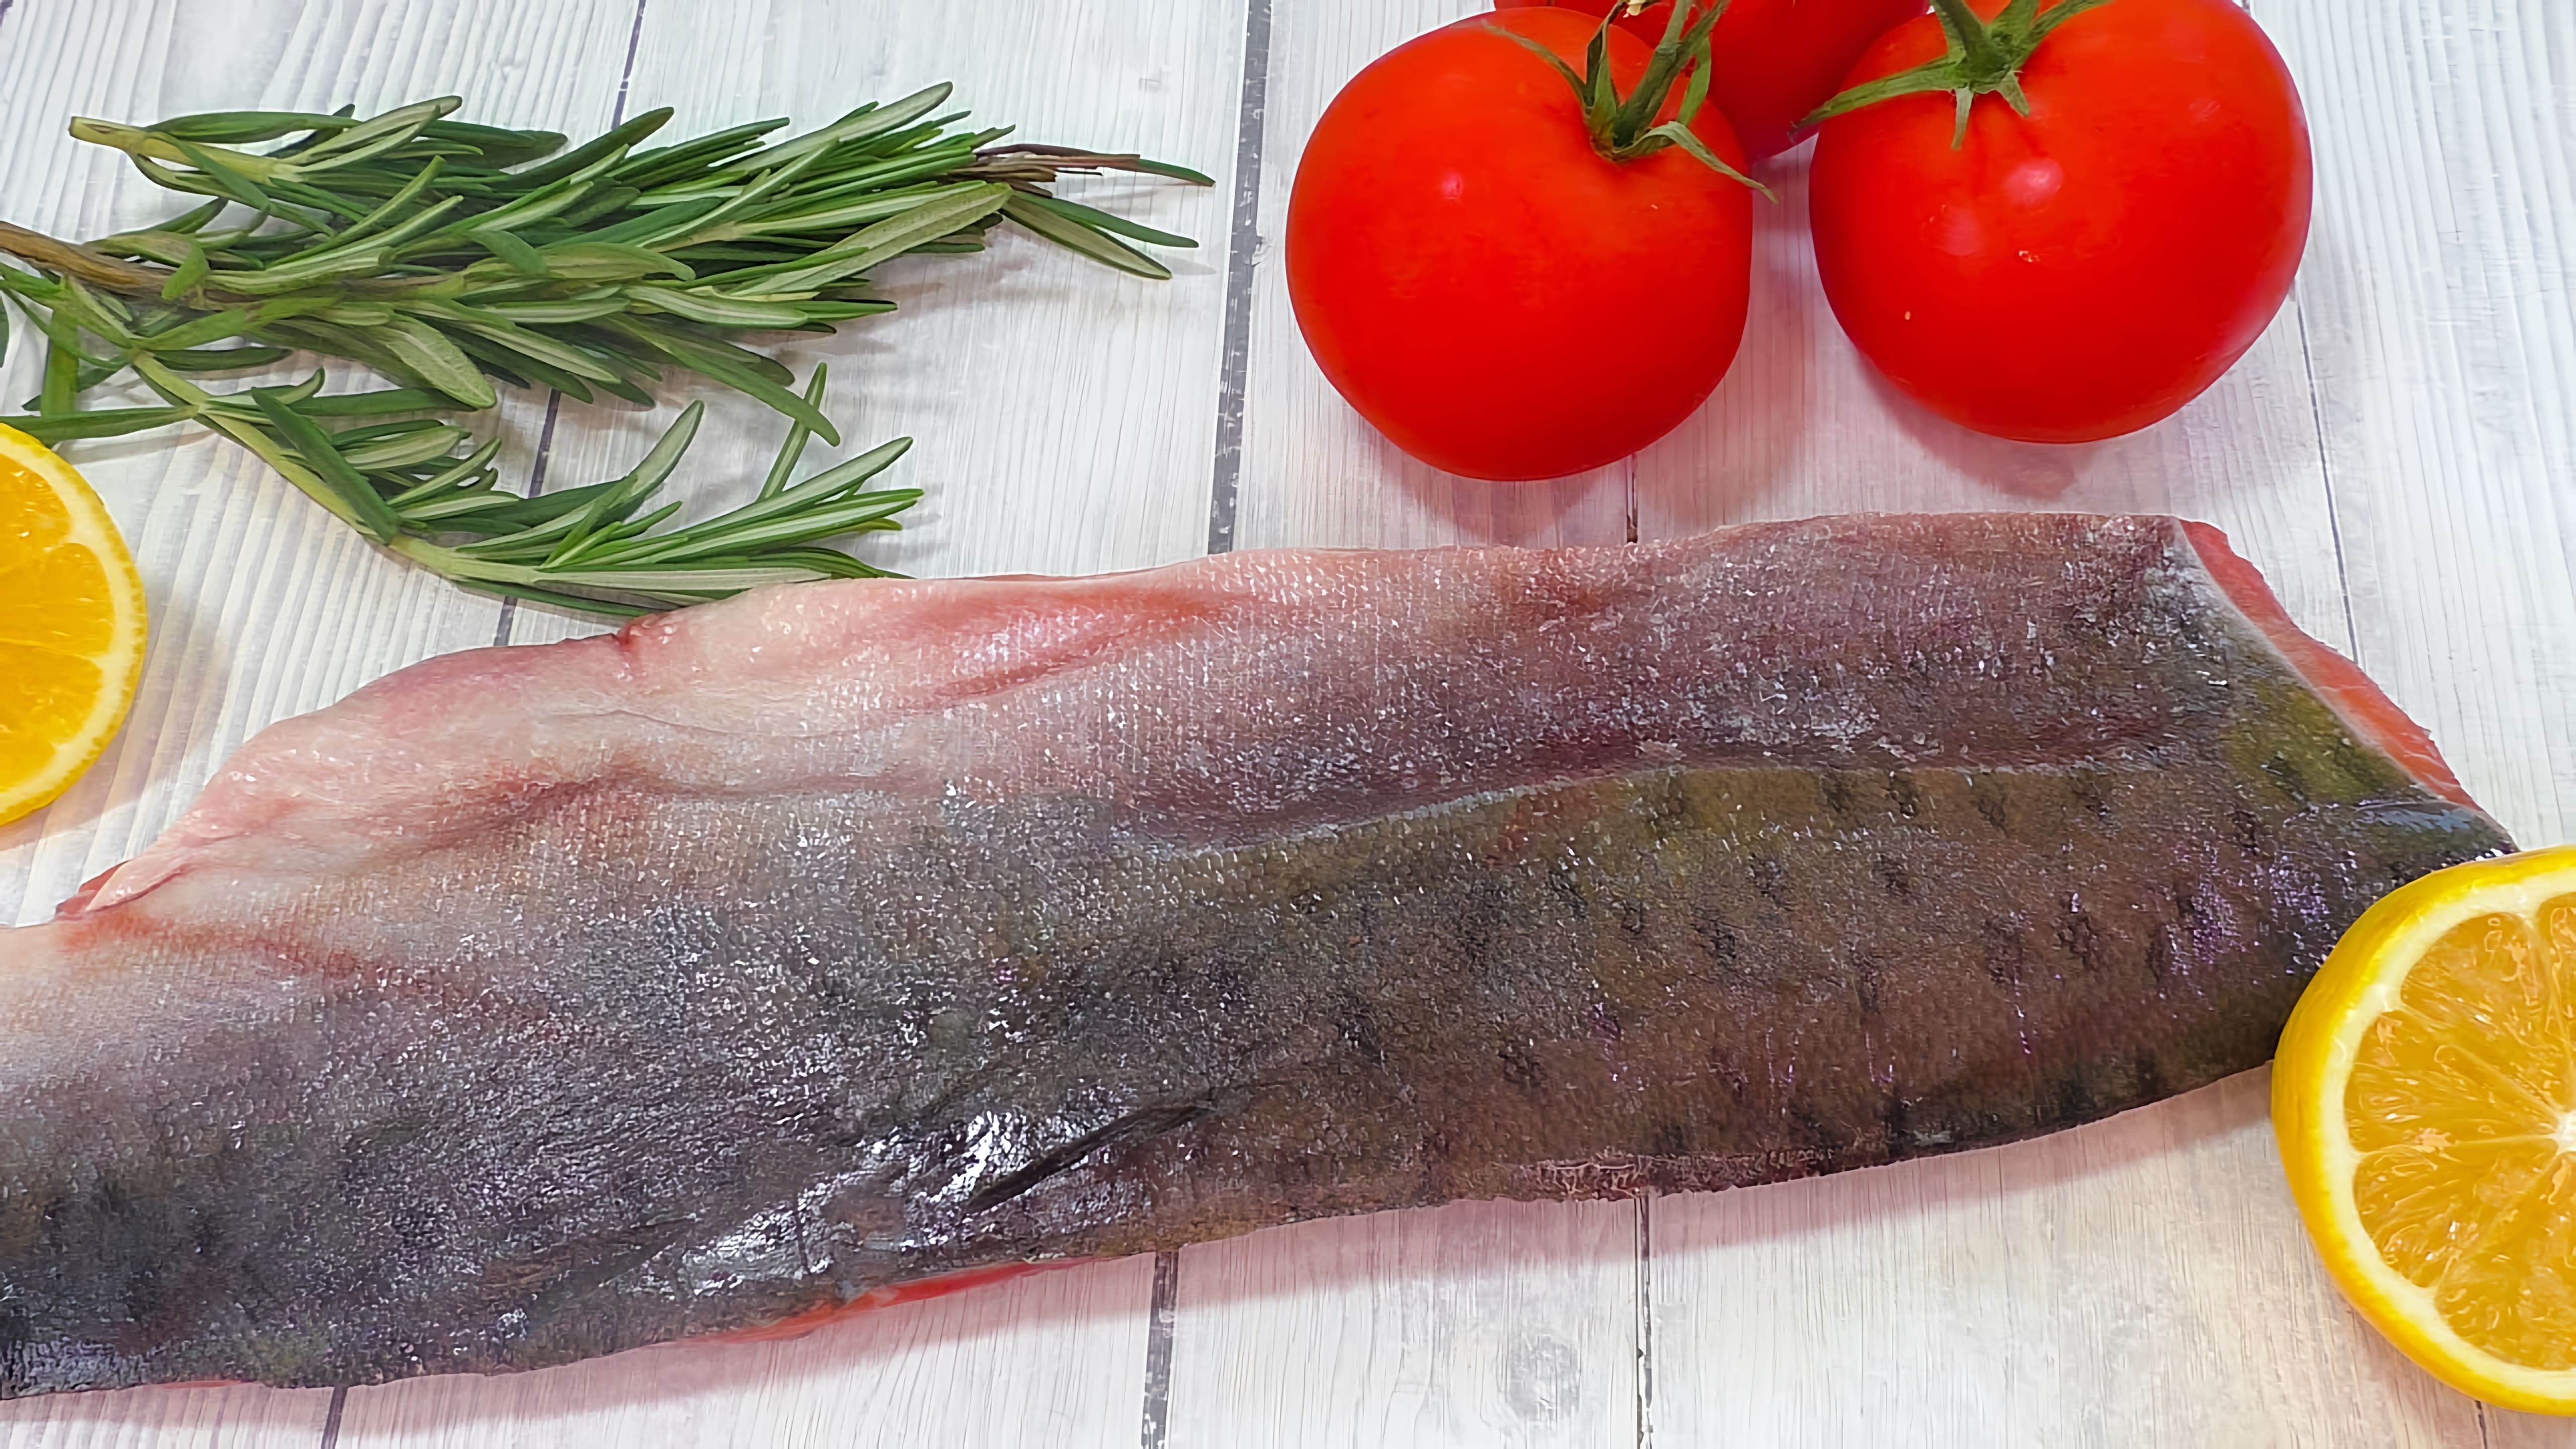 Видео: Легко и быстро готовится, как настоящий шеф-повар! Попробуйте эту вкусную рыбу уже сегодня!